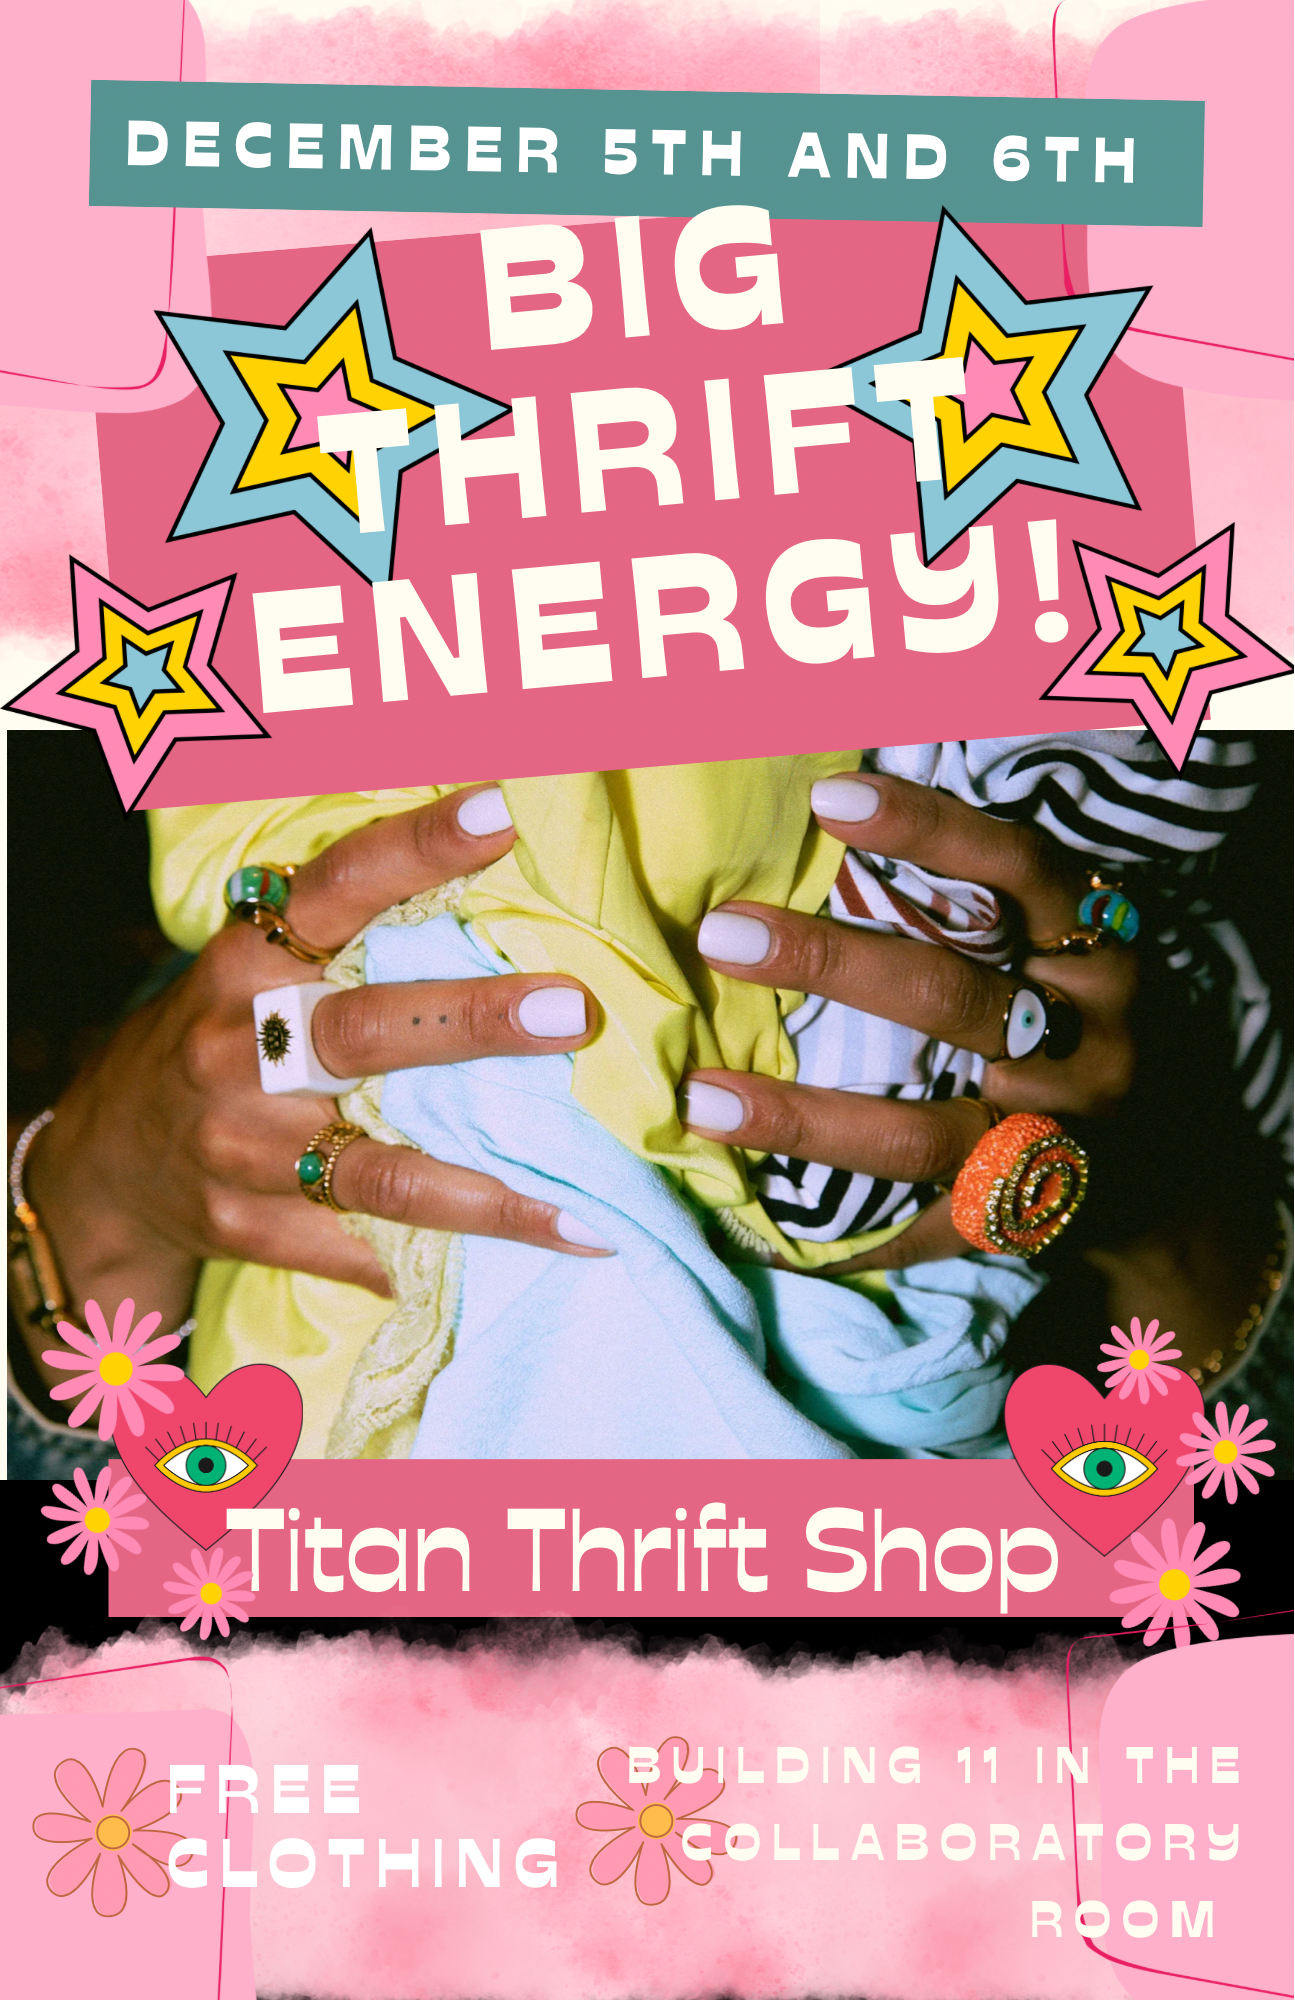 Flyer for Titan Thrift Shop, 1-3 p.m. Dec. 5-6 Building 11